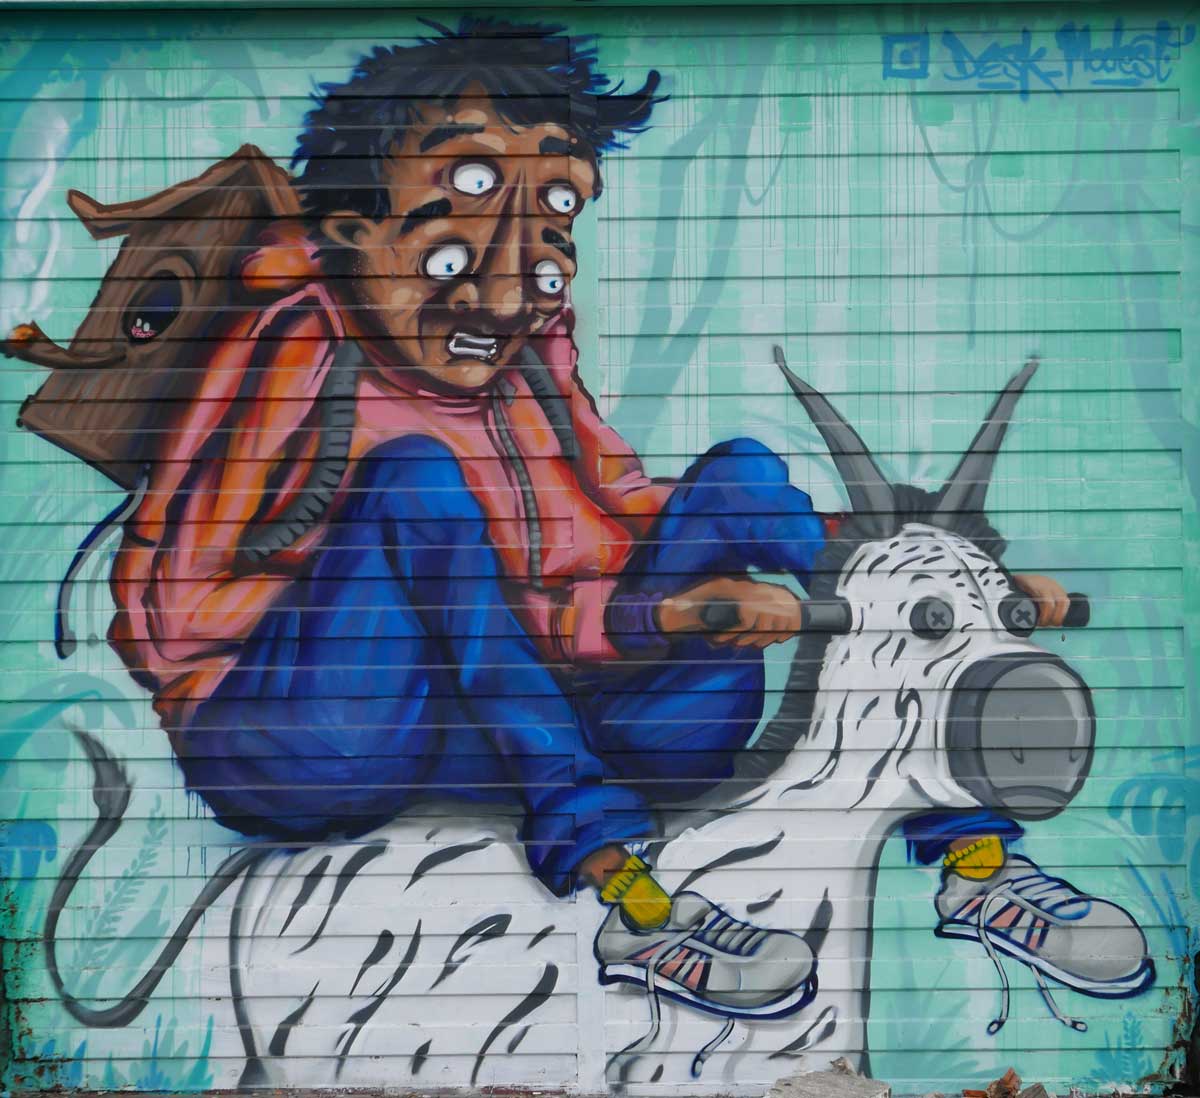 Garage door with double-eyed man. Street art in San Jose, Costa Rica